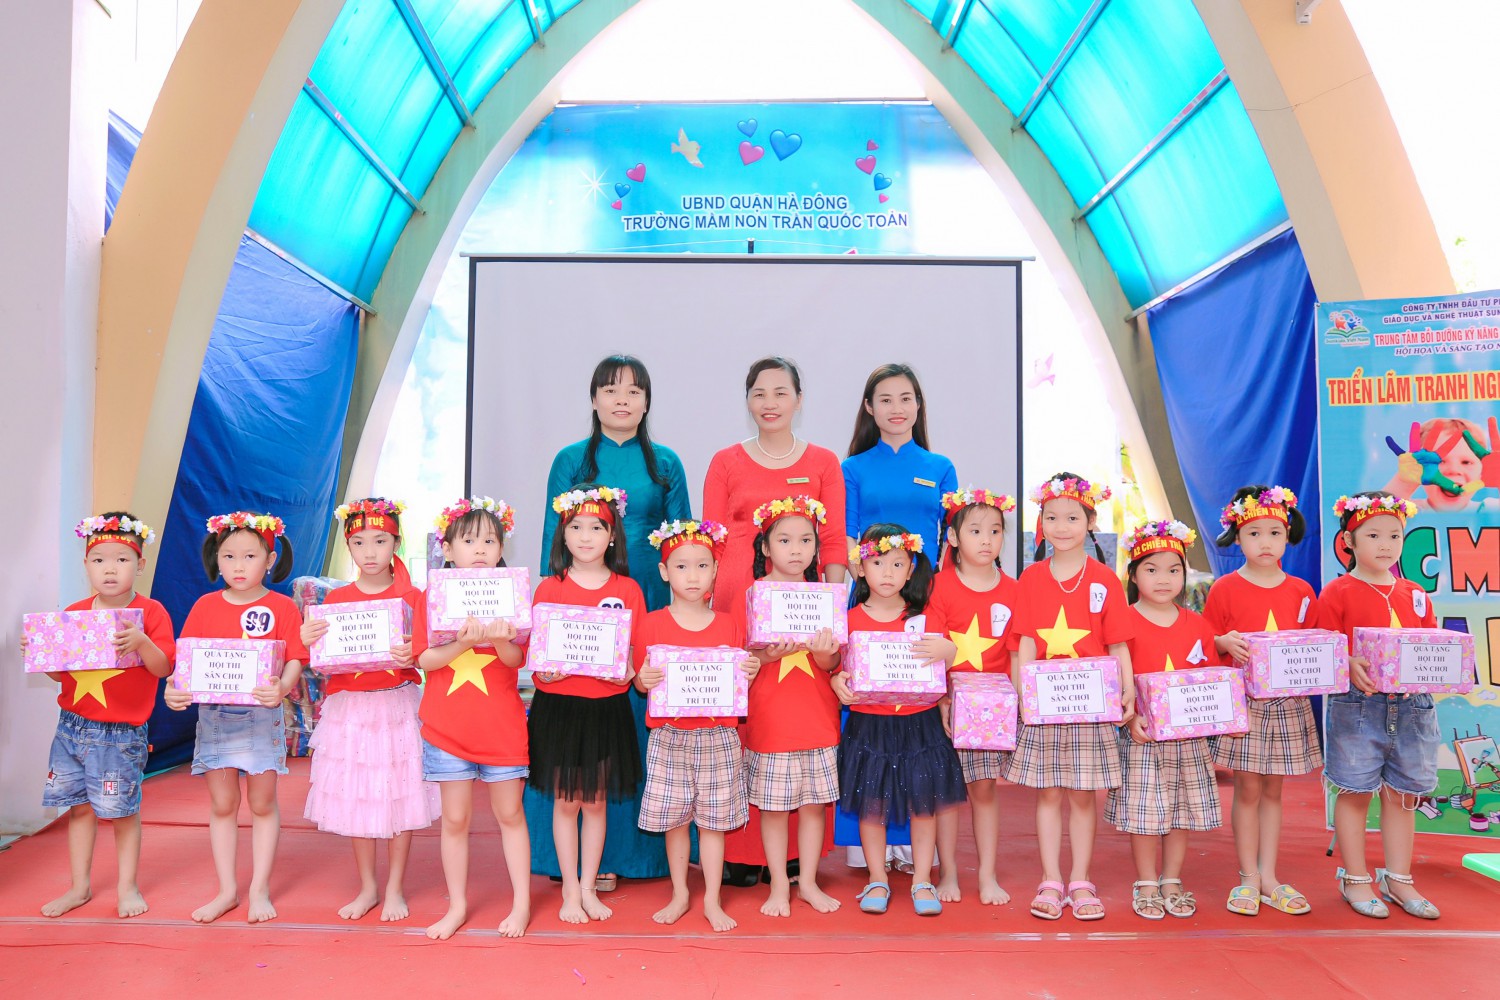 Ban giám hiệu trao thưởng cho các bé xuất sắc của cuộc thi Sân chơi trí tuệ